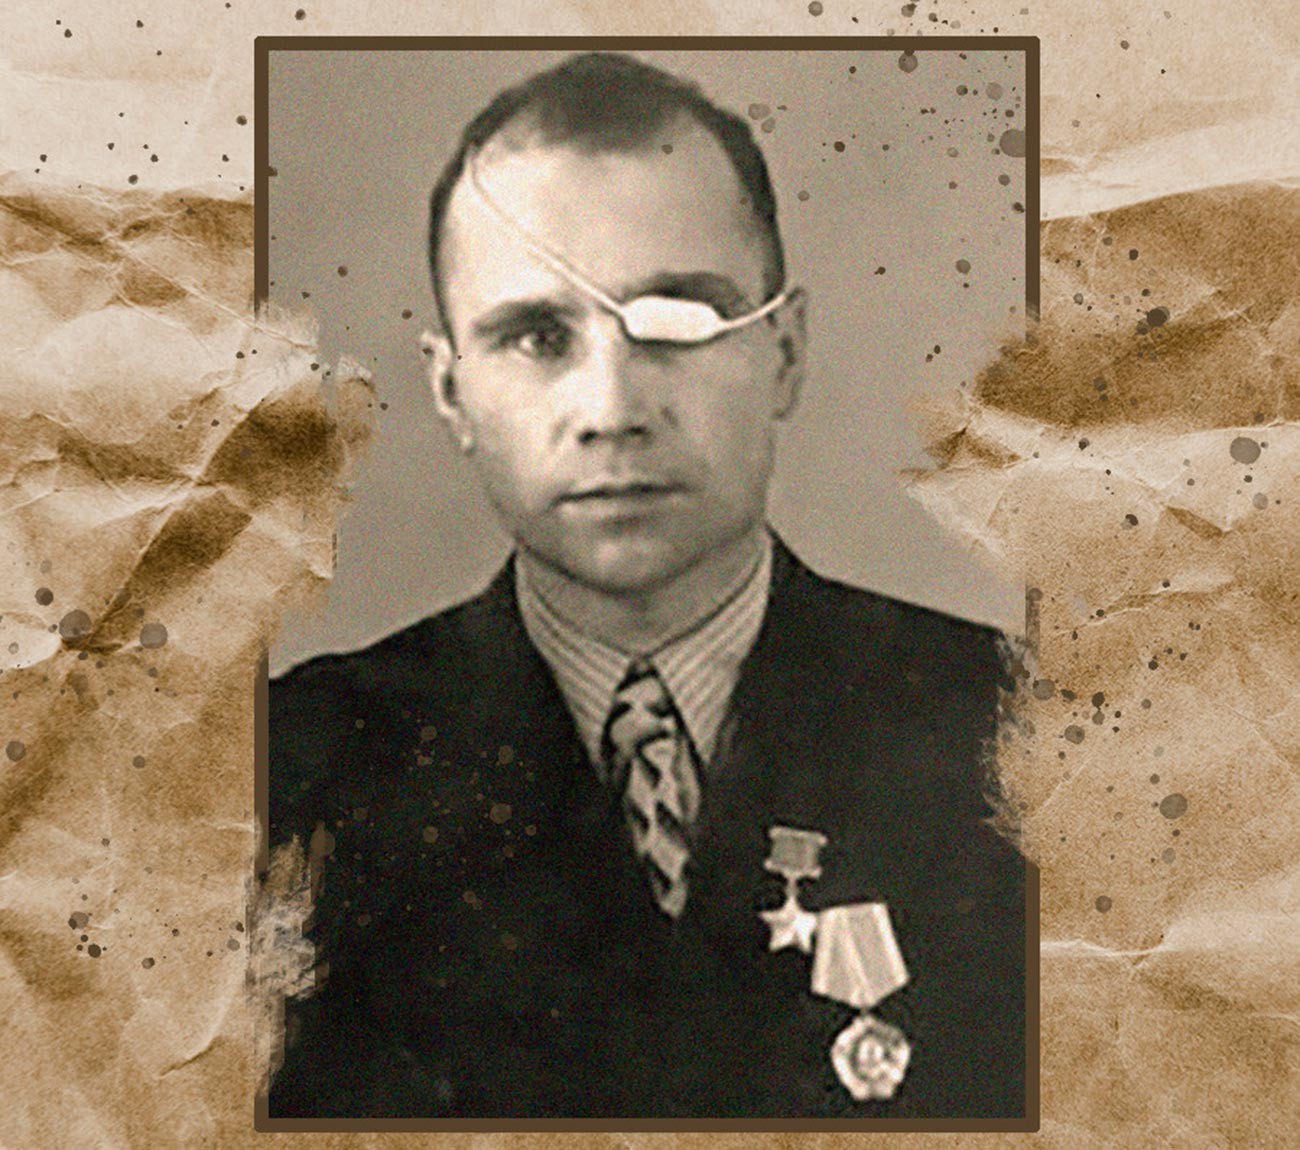 Sersan Vasily Grigin dicopot gelarnya karena terlibat hooliganisme, pencurian, dan penganiayaan yang berdampak fatal.